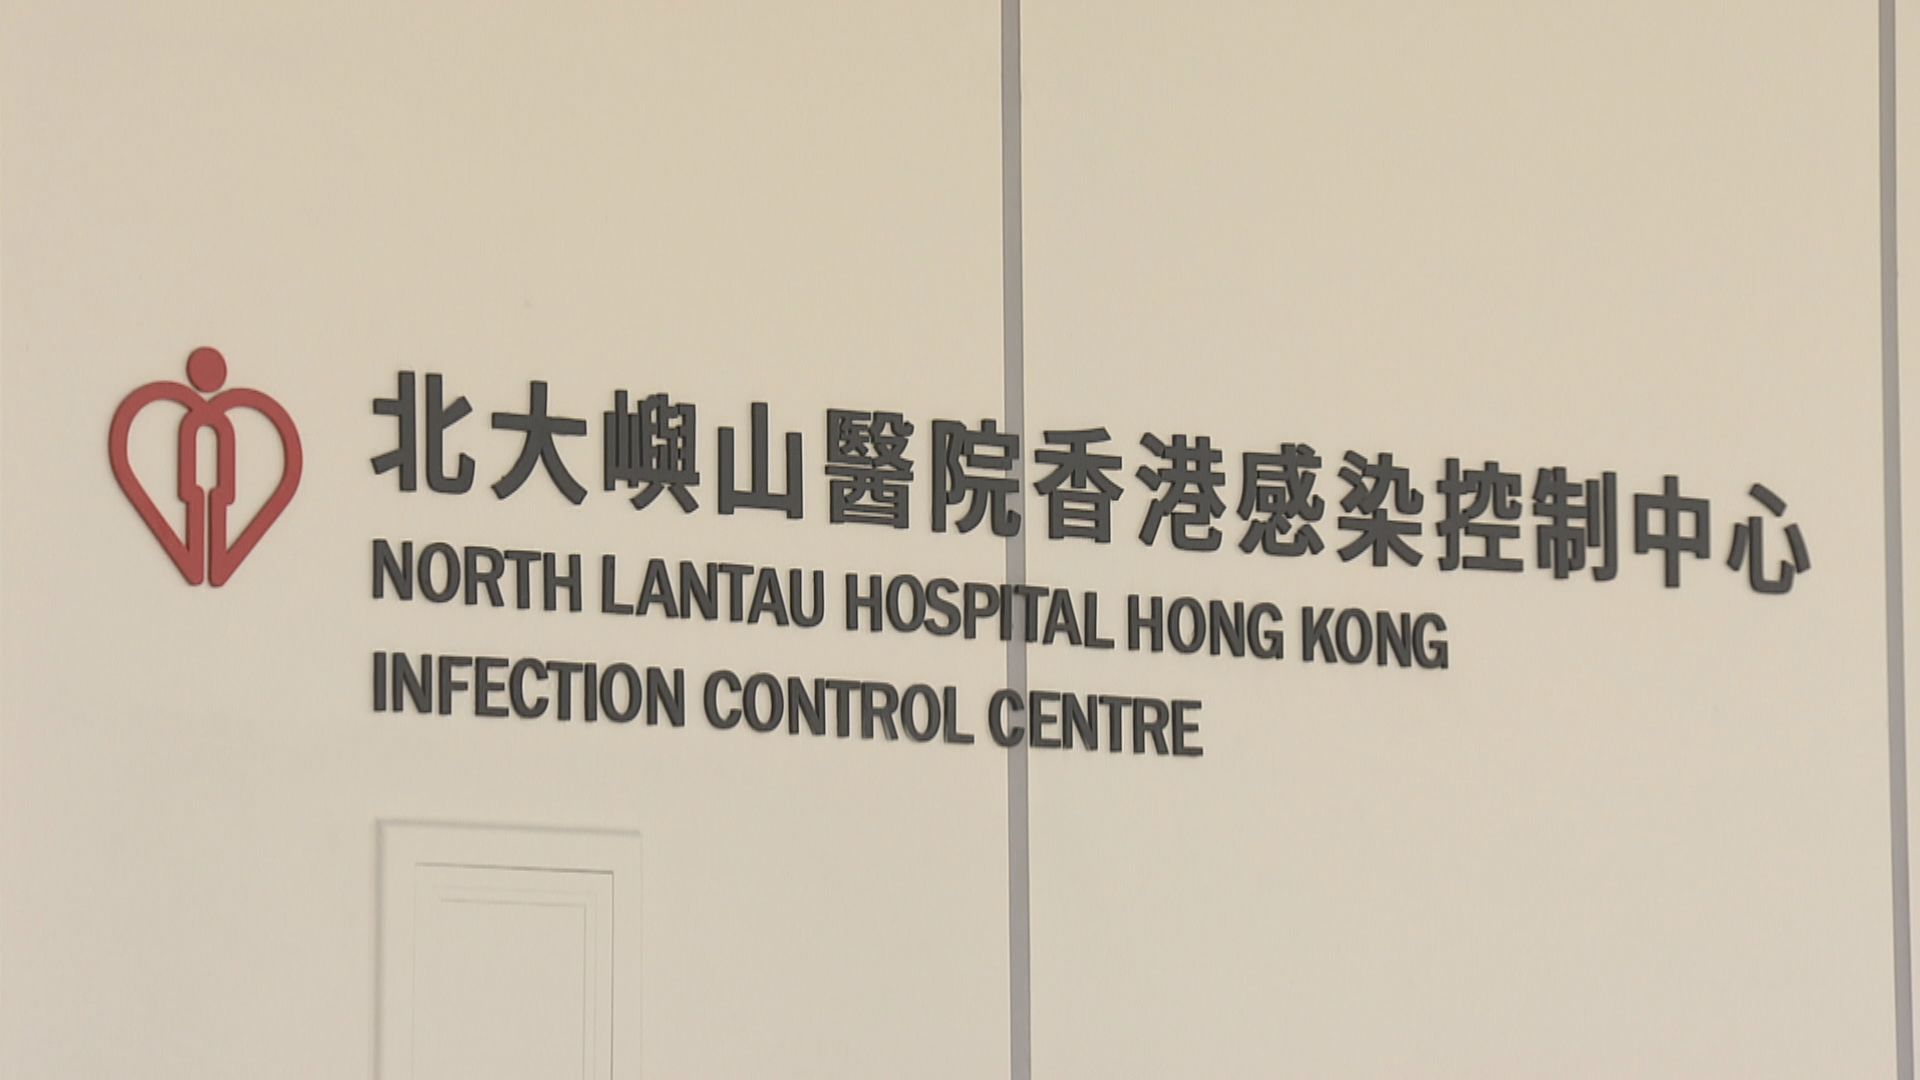 北大嶼山醫院香港感染控制中心團隊獲頒醫管局傑出員工及團隊獎